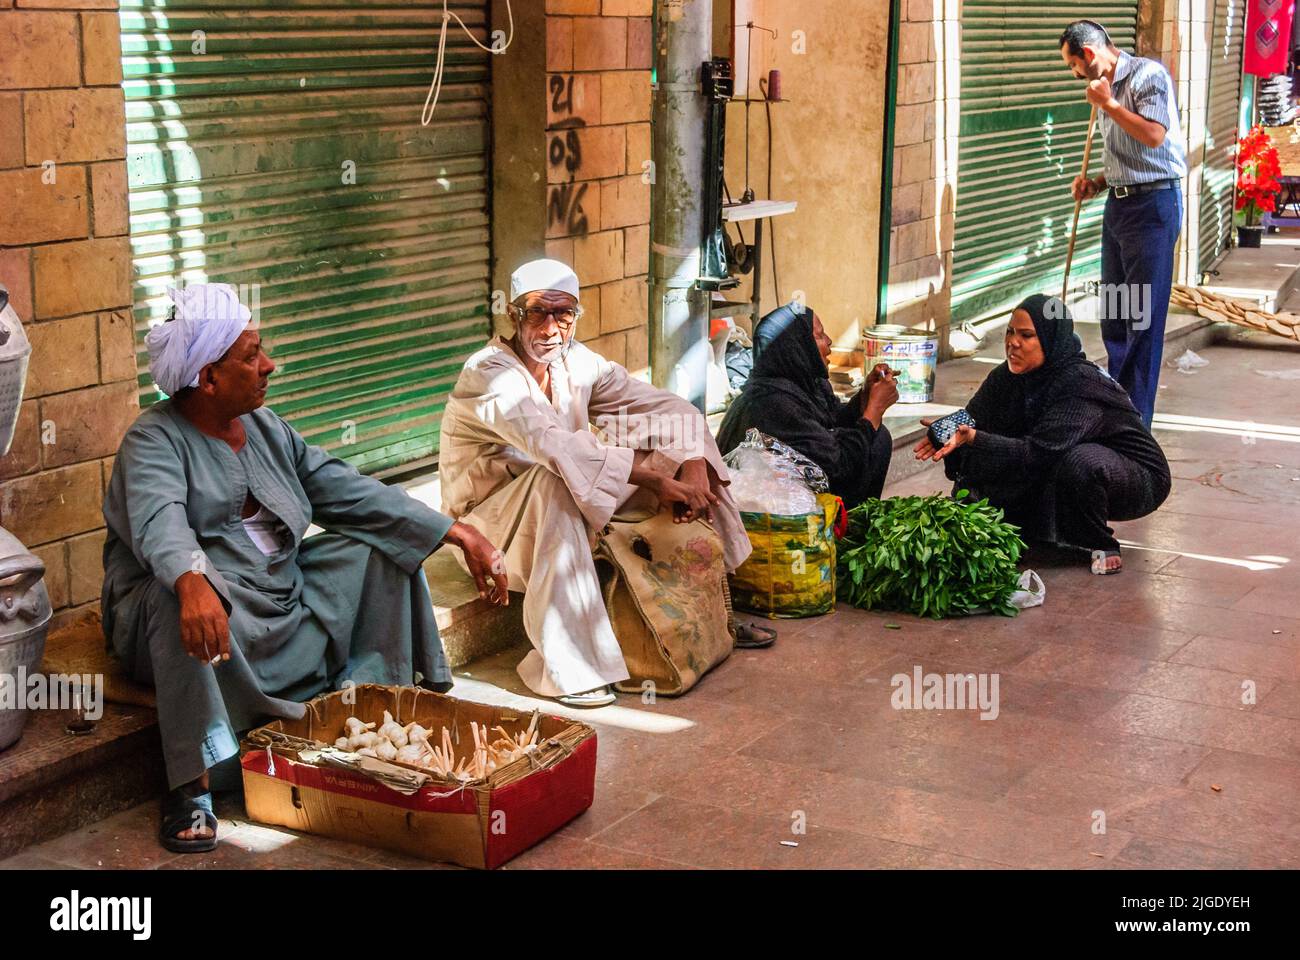 Vendeurs de rue dans le marché d'Assouan - haute-Égypte Banque D'Images